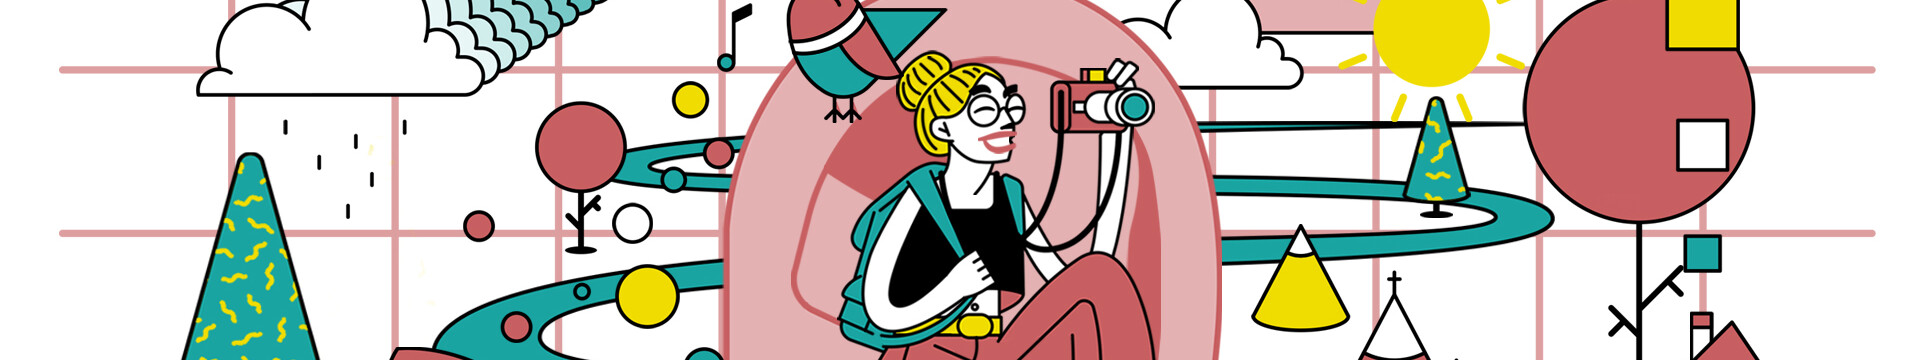 Grafik zum neuen Podcast von Tourismus NRW "Hör mal, wer da reist.". Unter anderem schaut eine Frau durch einen Fotoapparat.